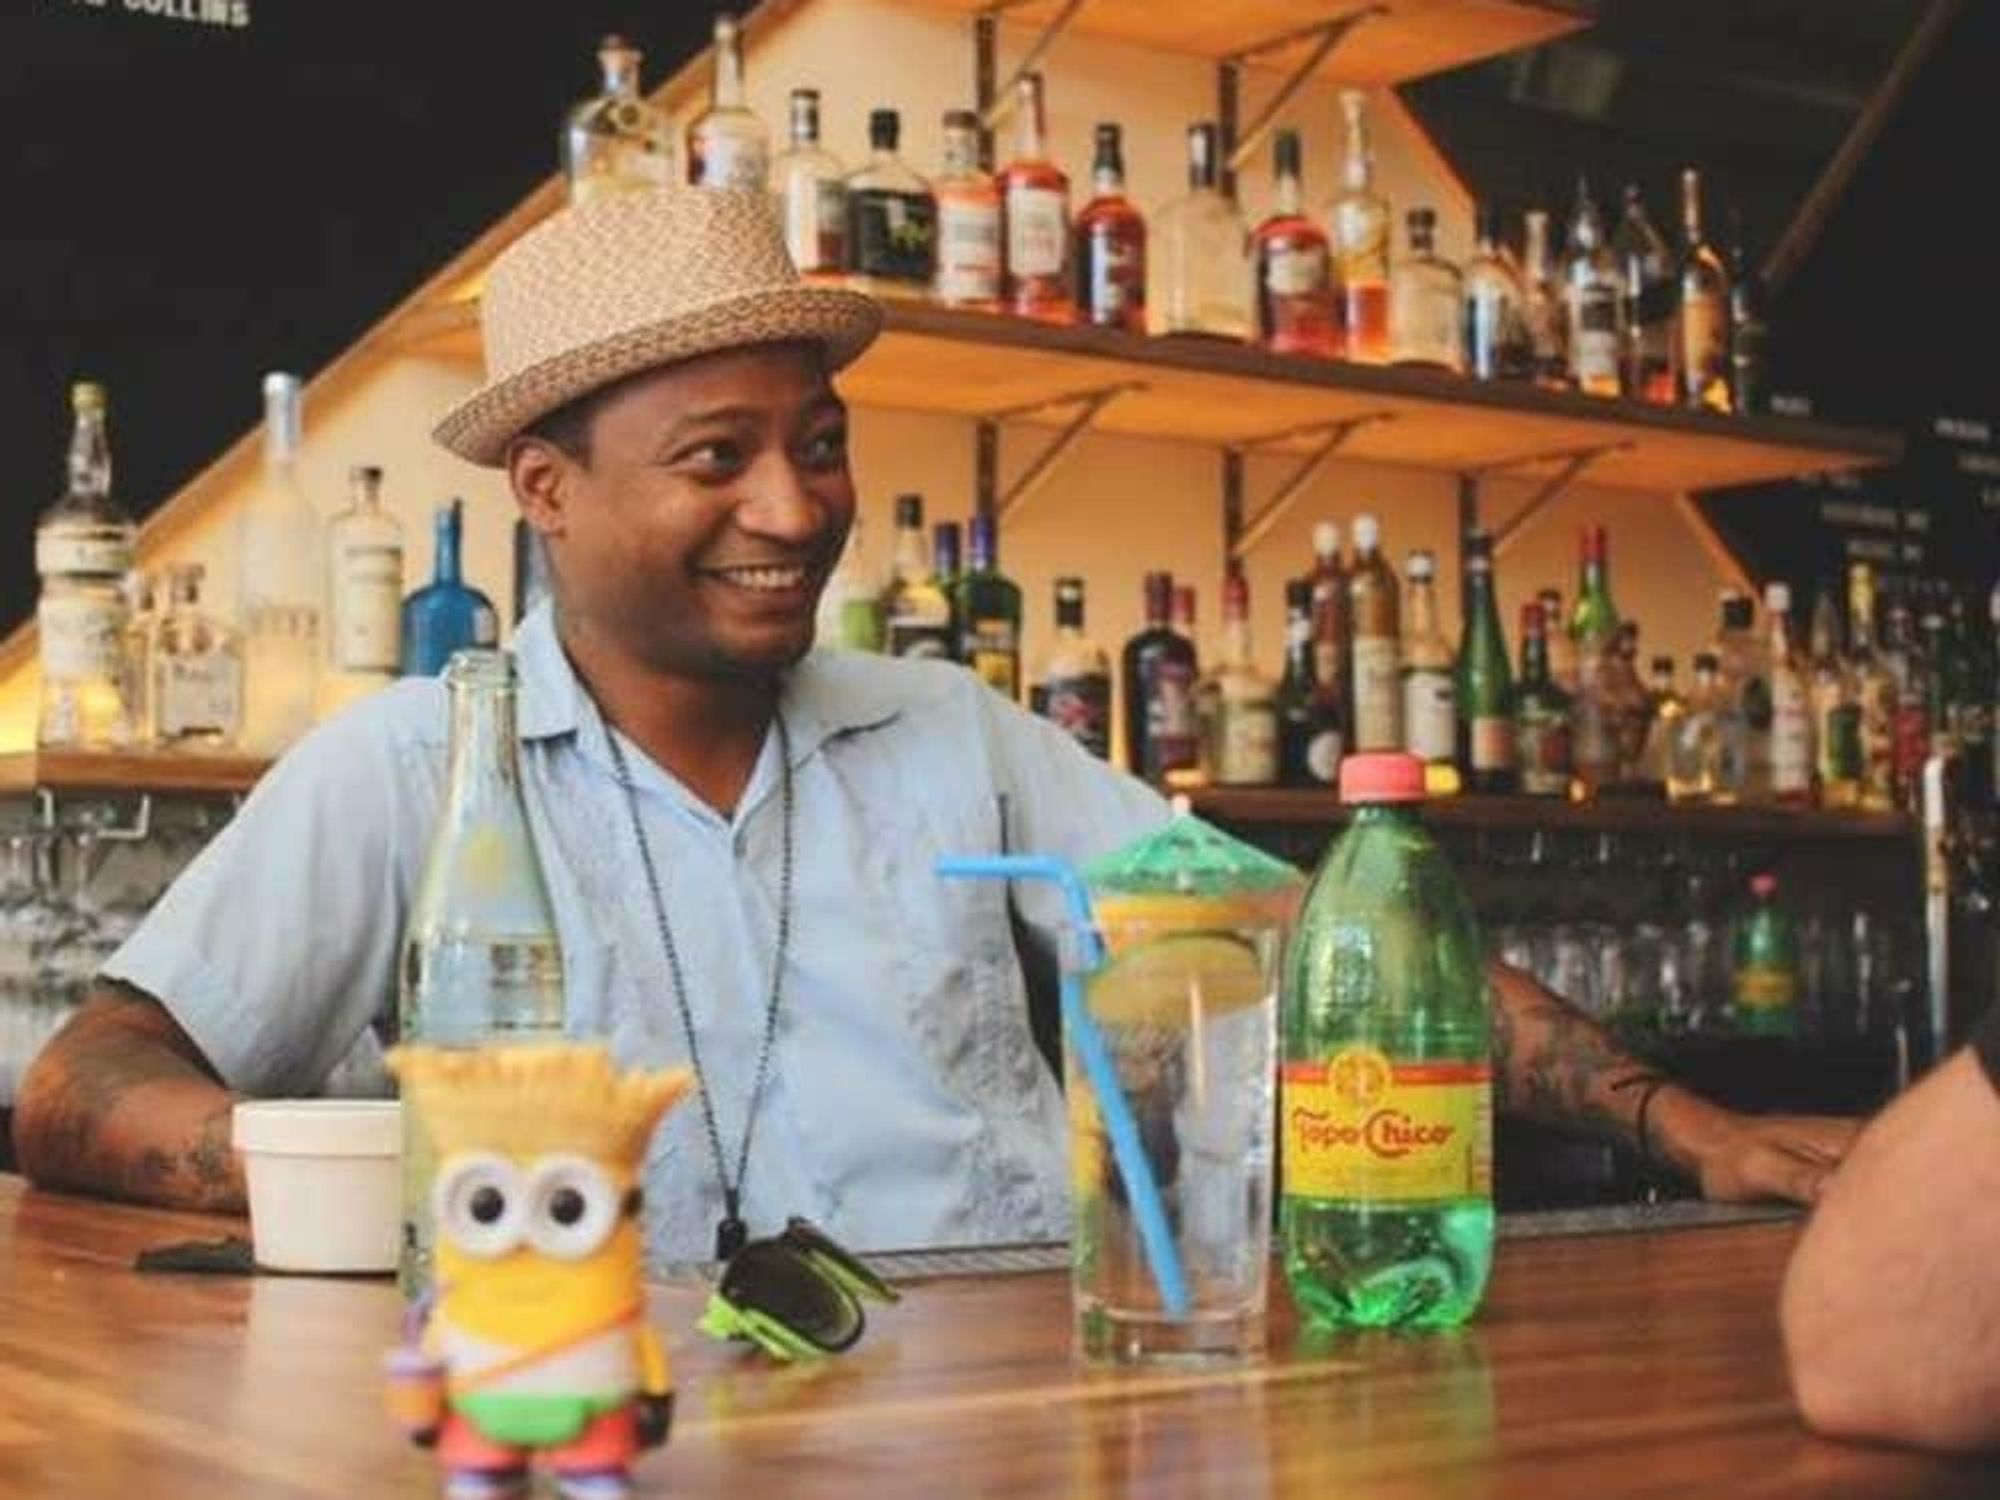 Dallas bartender Omar Yeefoon